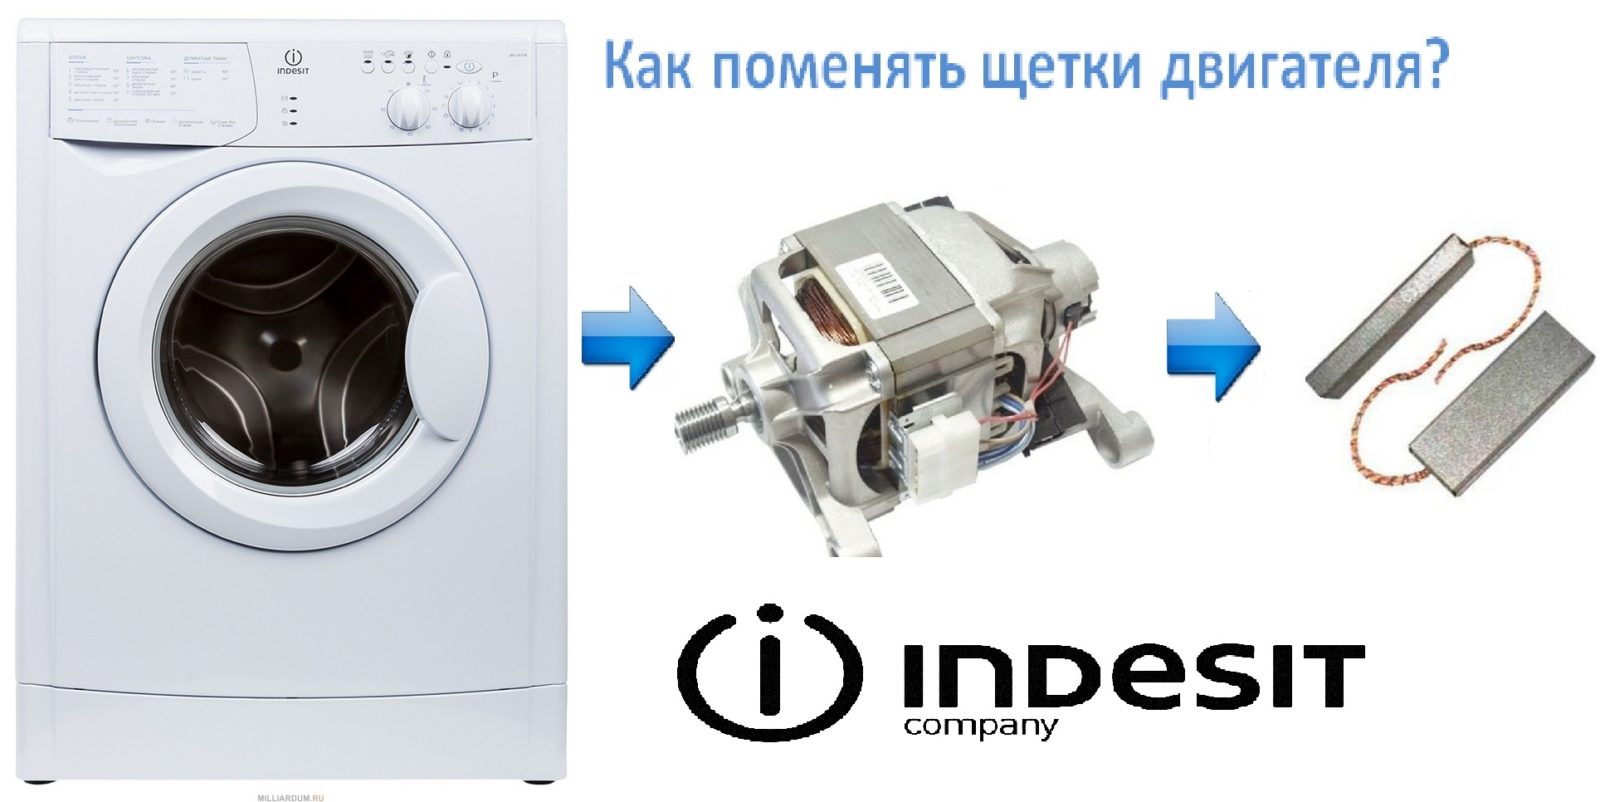 So wechseln Sie die Bürsten an einer Indesit-Waschmaschine